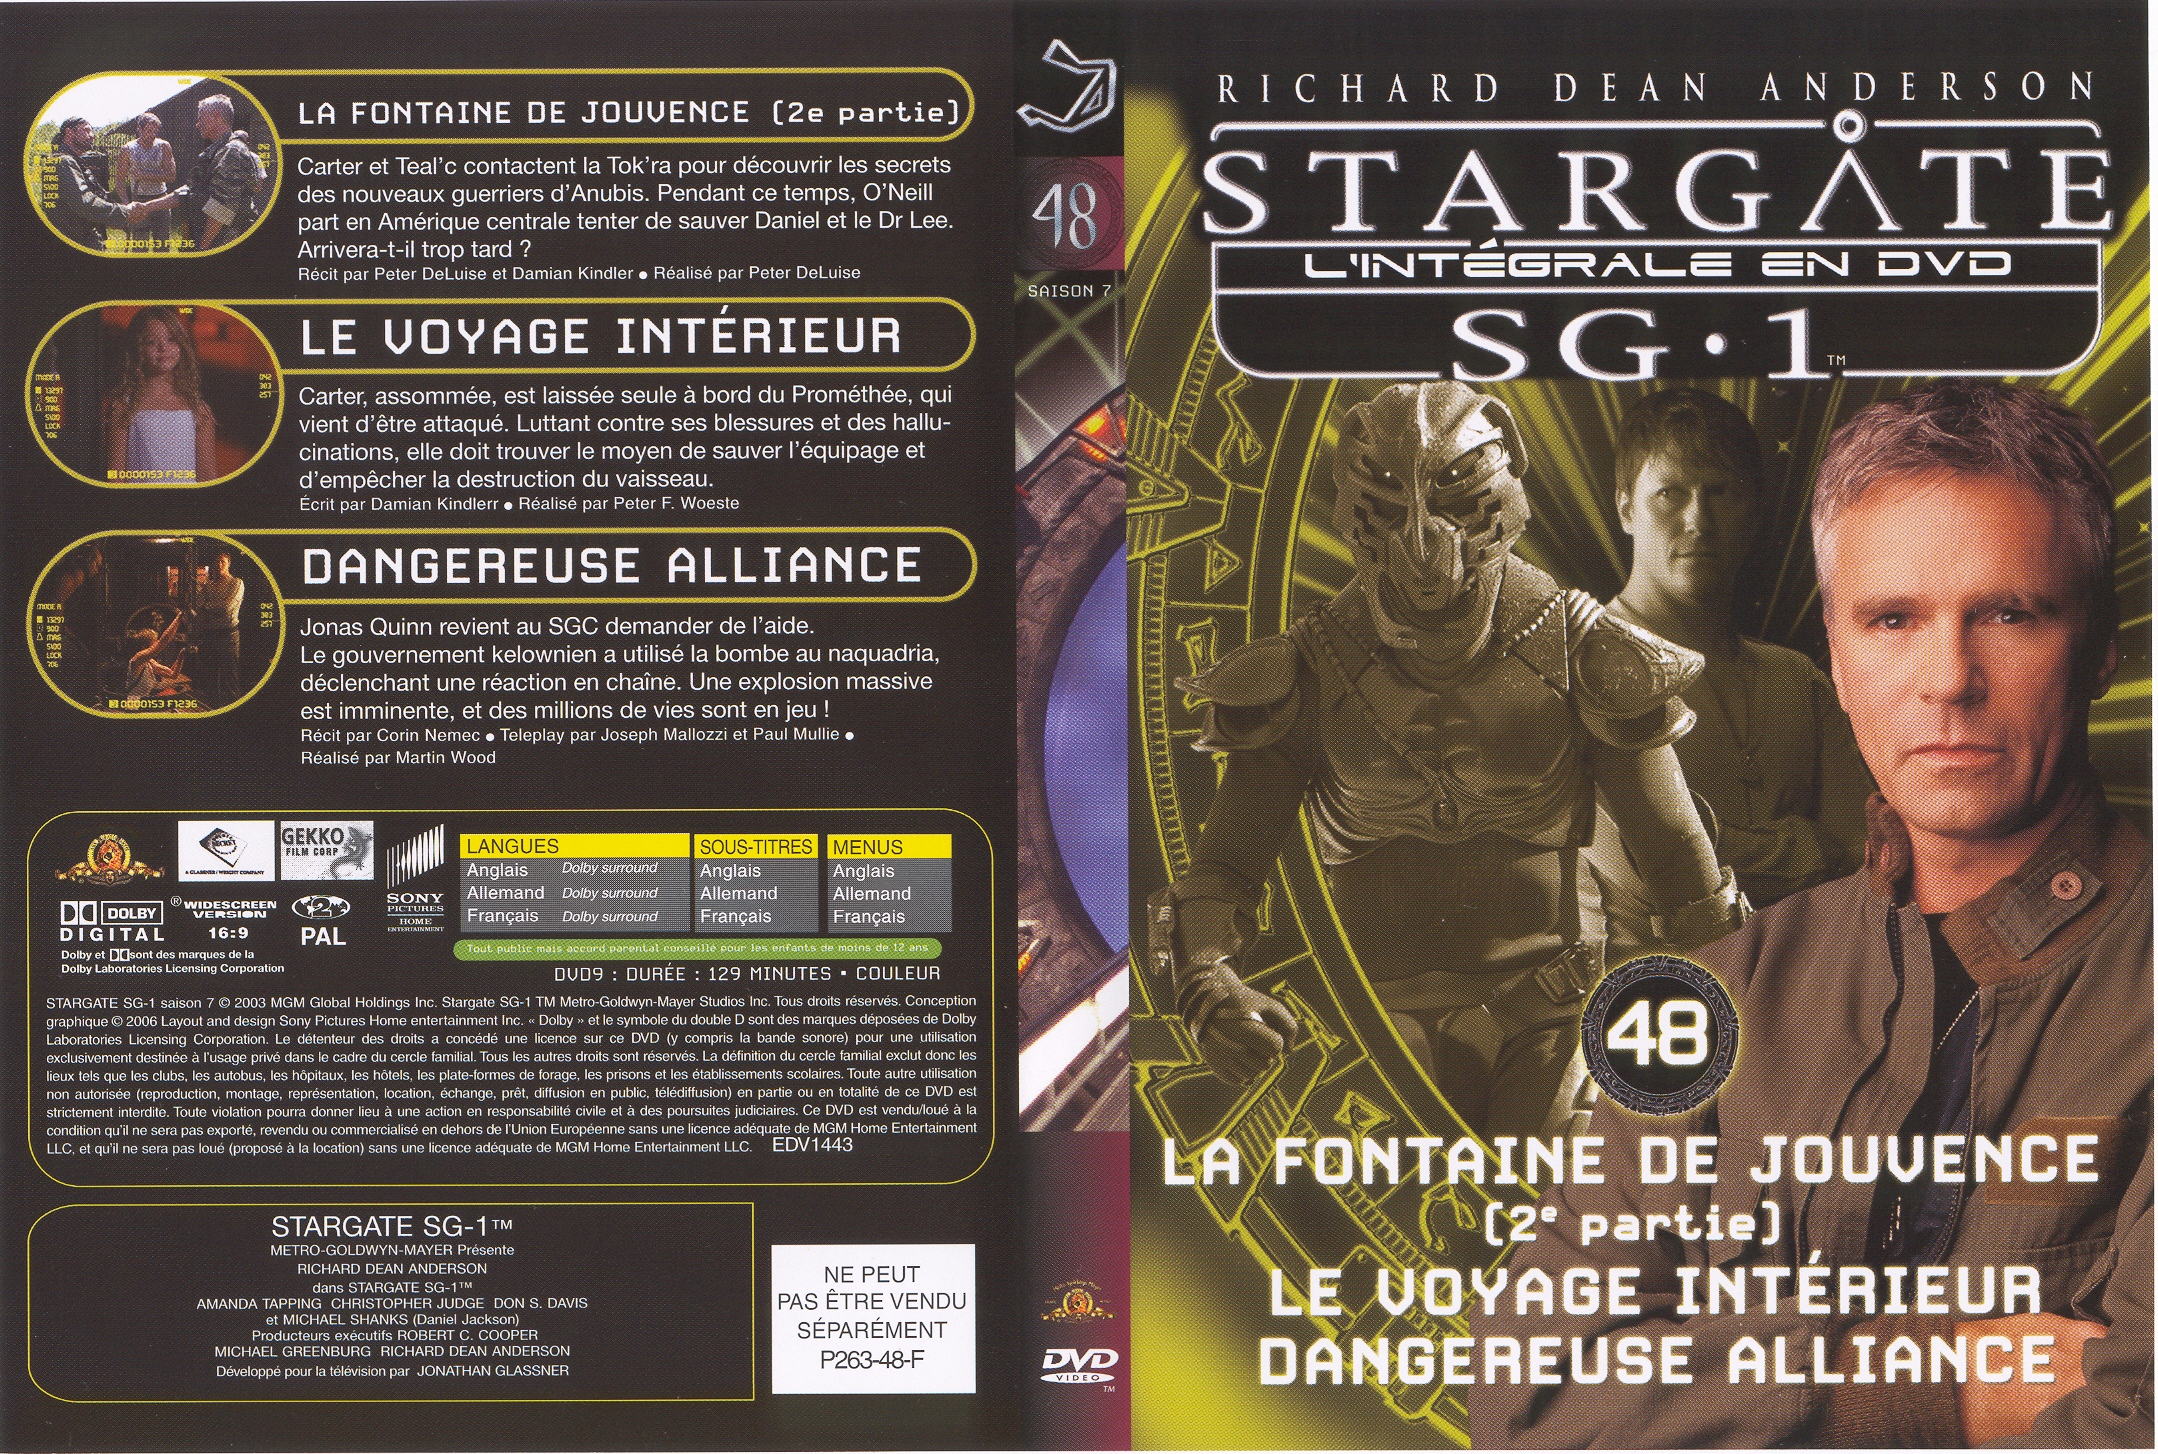 Jaquette DVD Stargate saison 7 vol 48